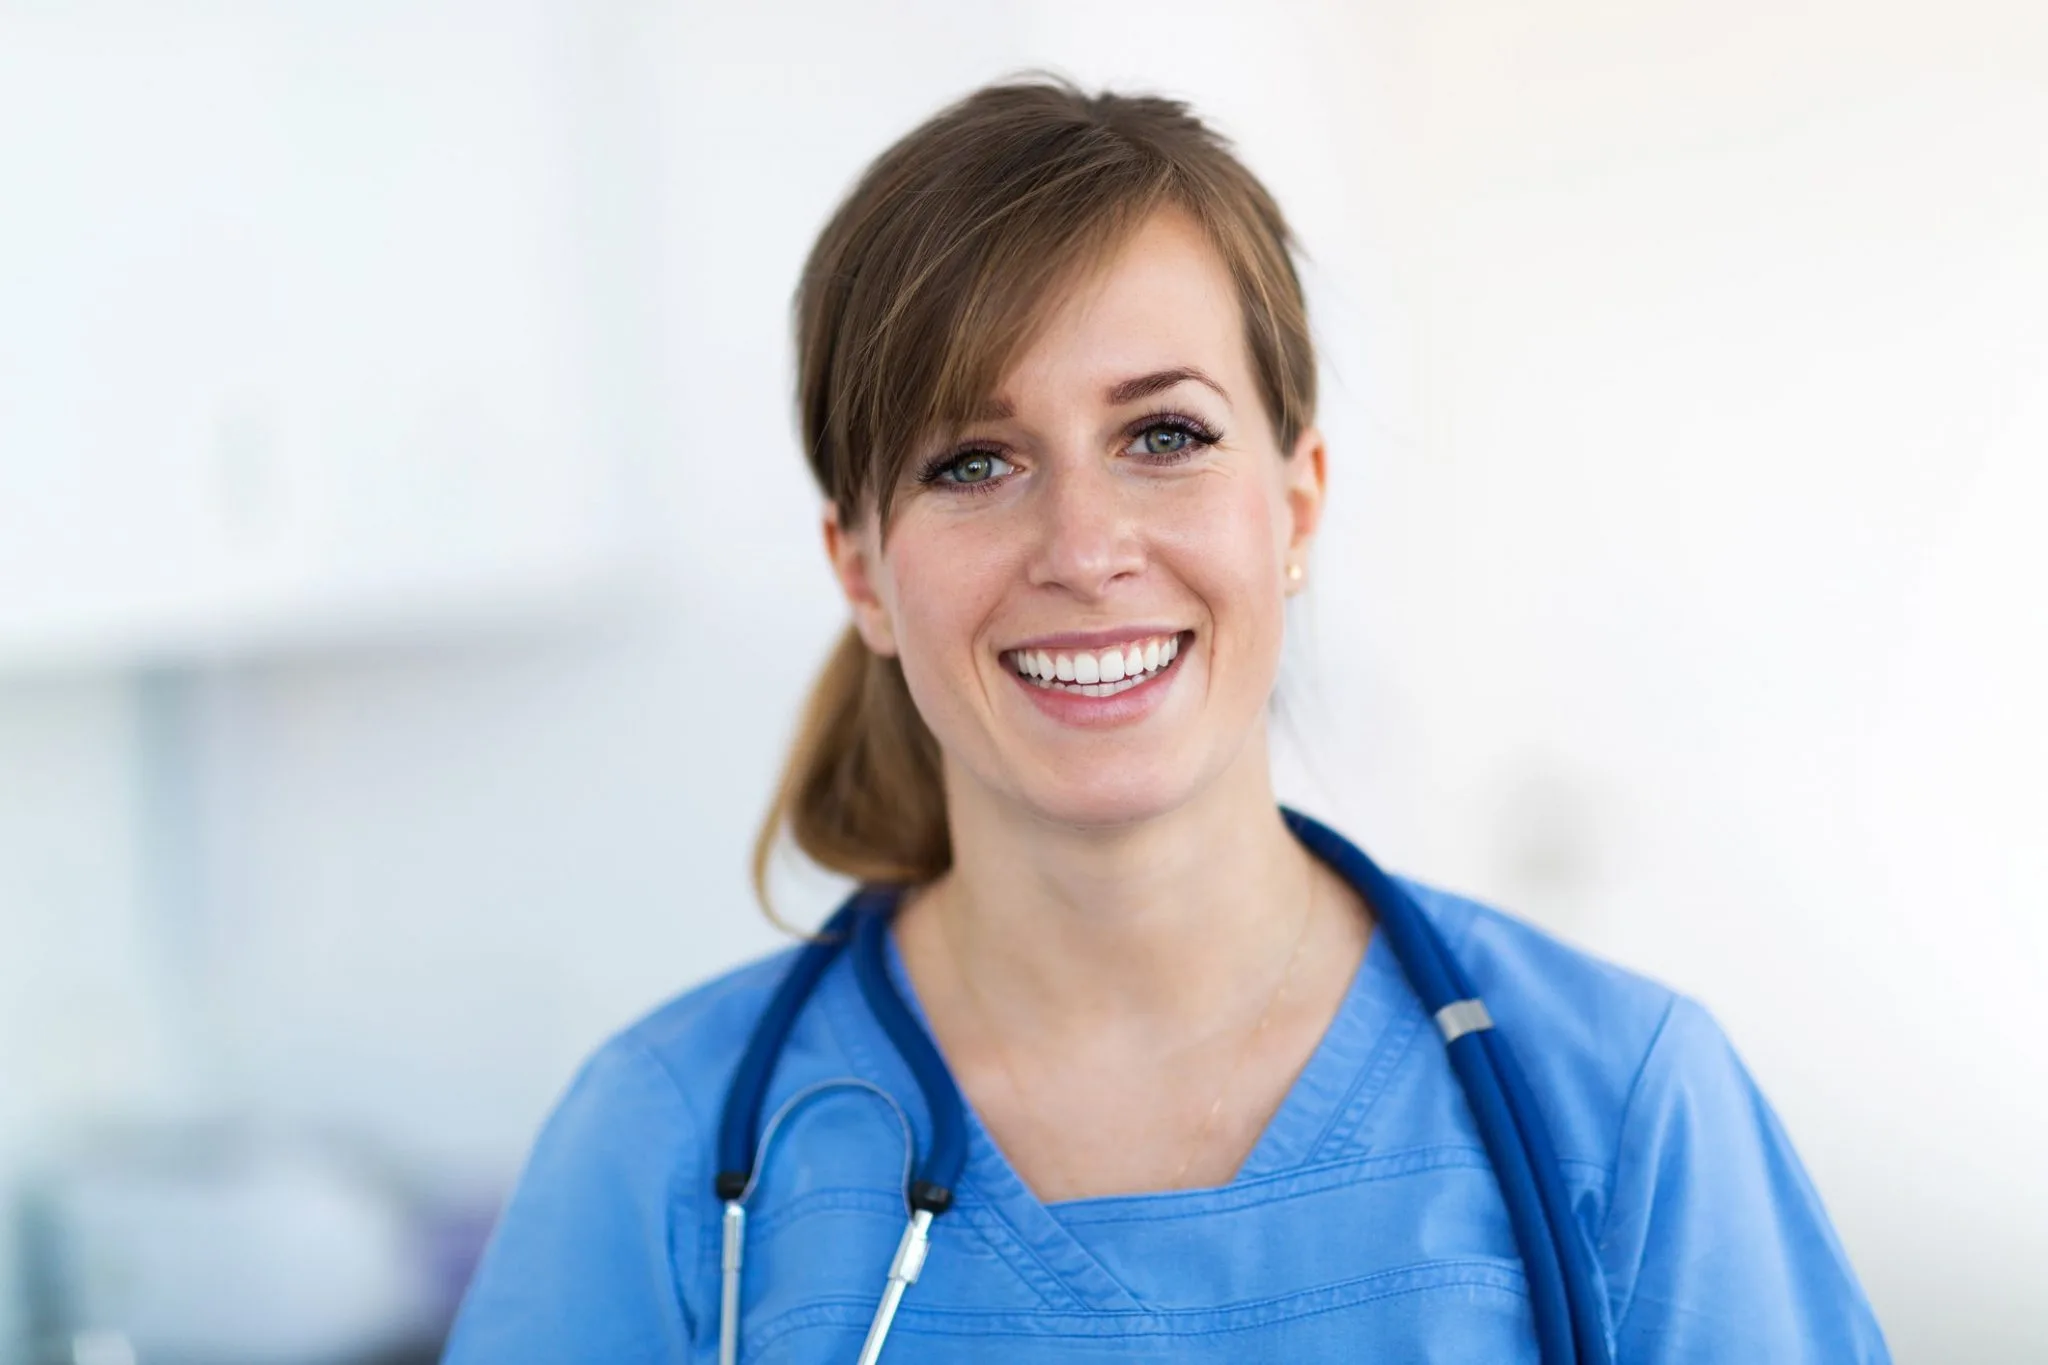 توازن الحياة العملية: نصائح للمساعد الممرض لتحقيق التوازن بين العمل والحياة الشخصية